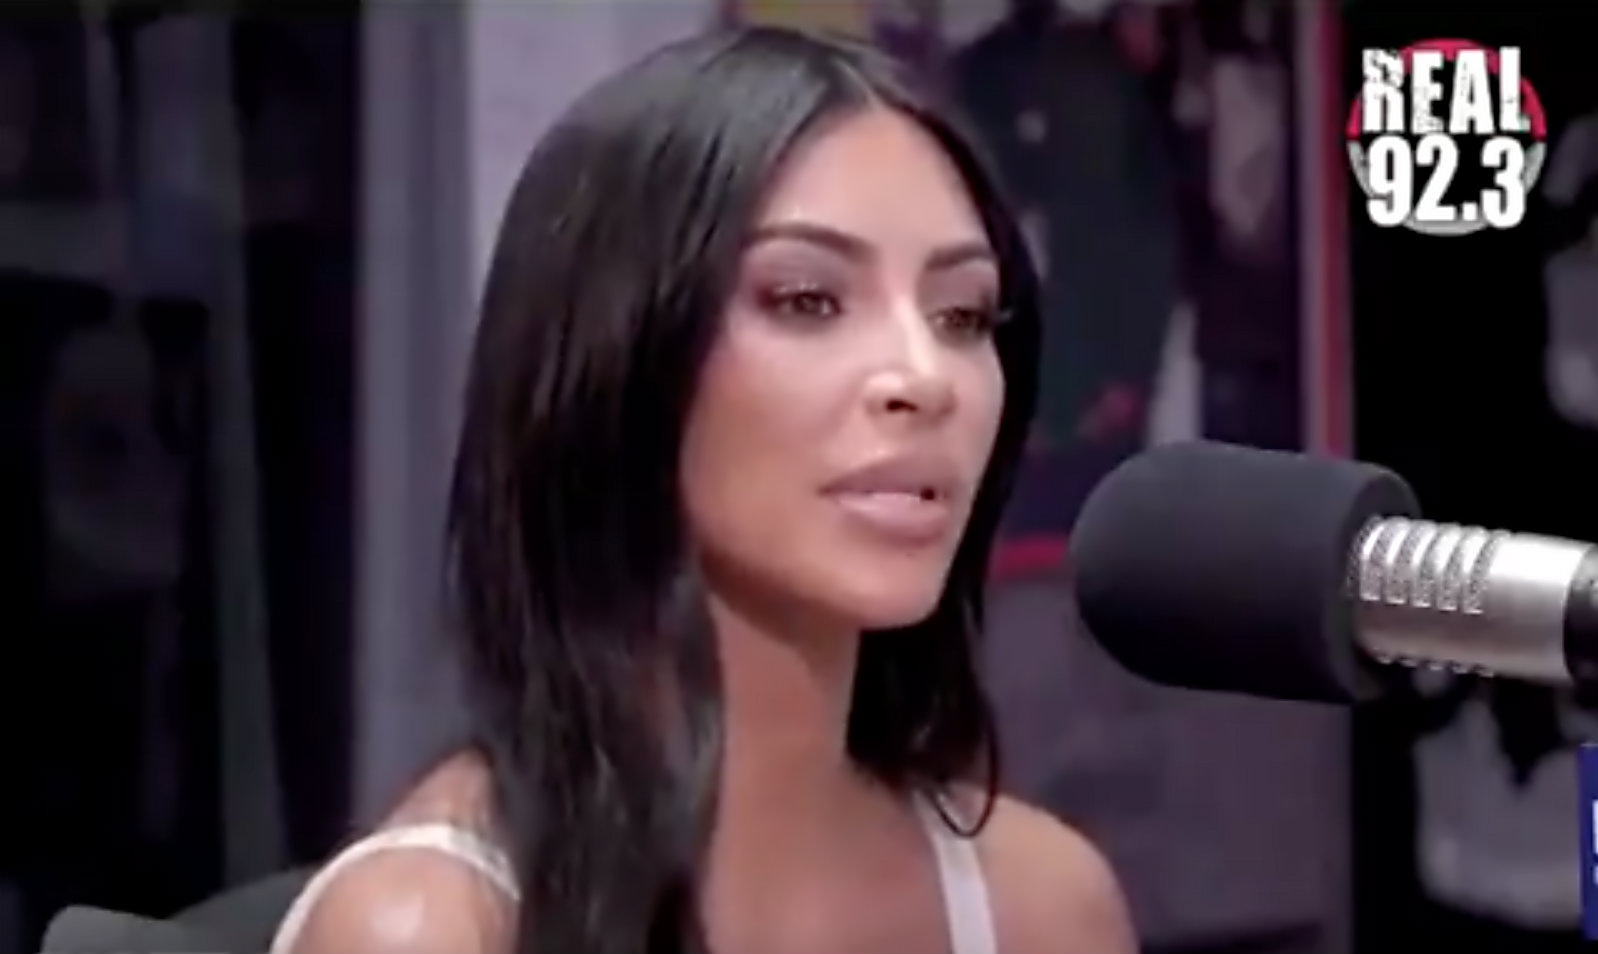 Kim Kardashian REAL923 LA interview